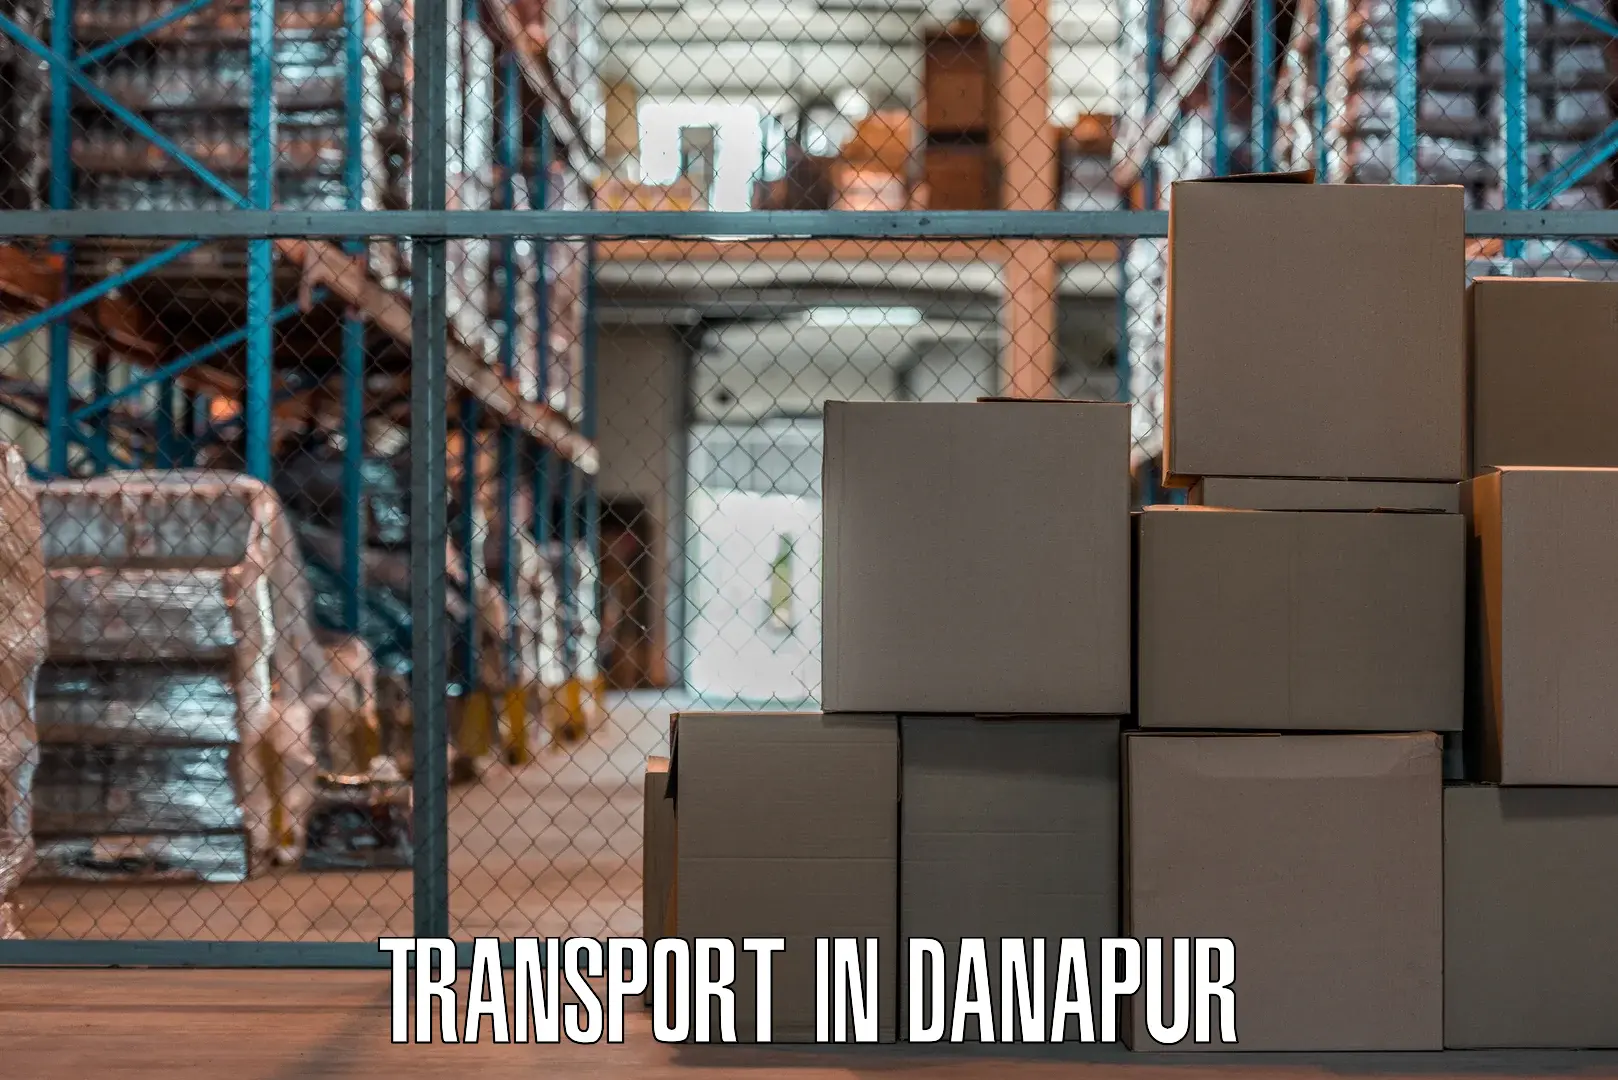 Intercity transport in Danapur